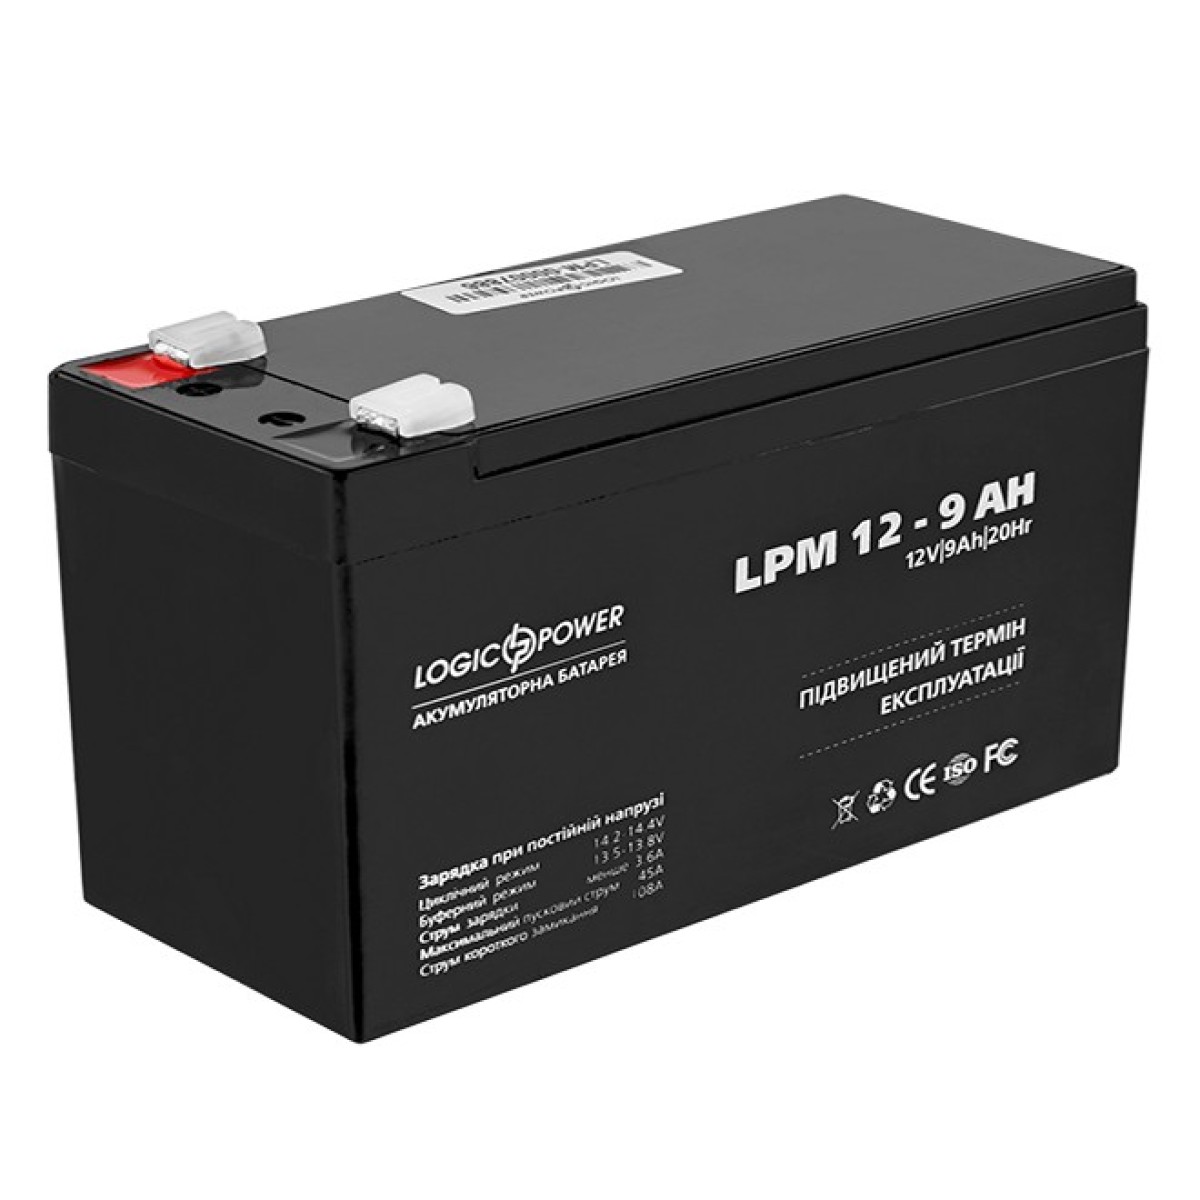 Акумулятор AGM LPM 12 - 9.0 AH 256_256.jpg